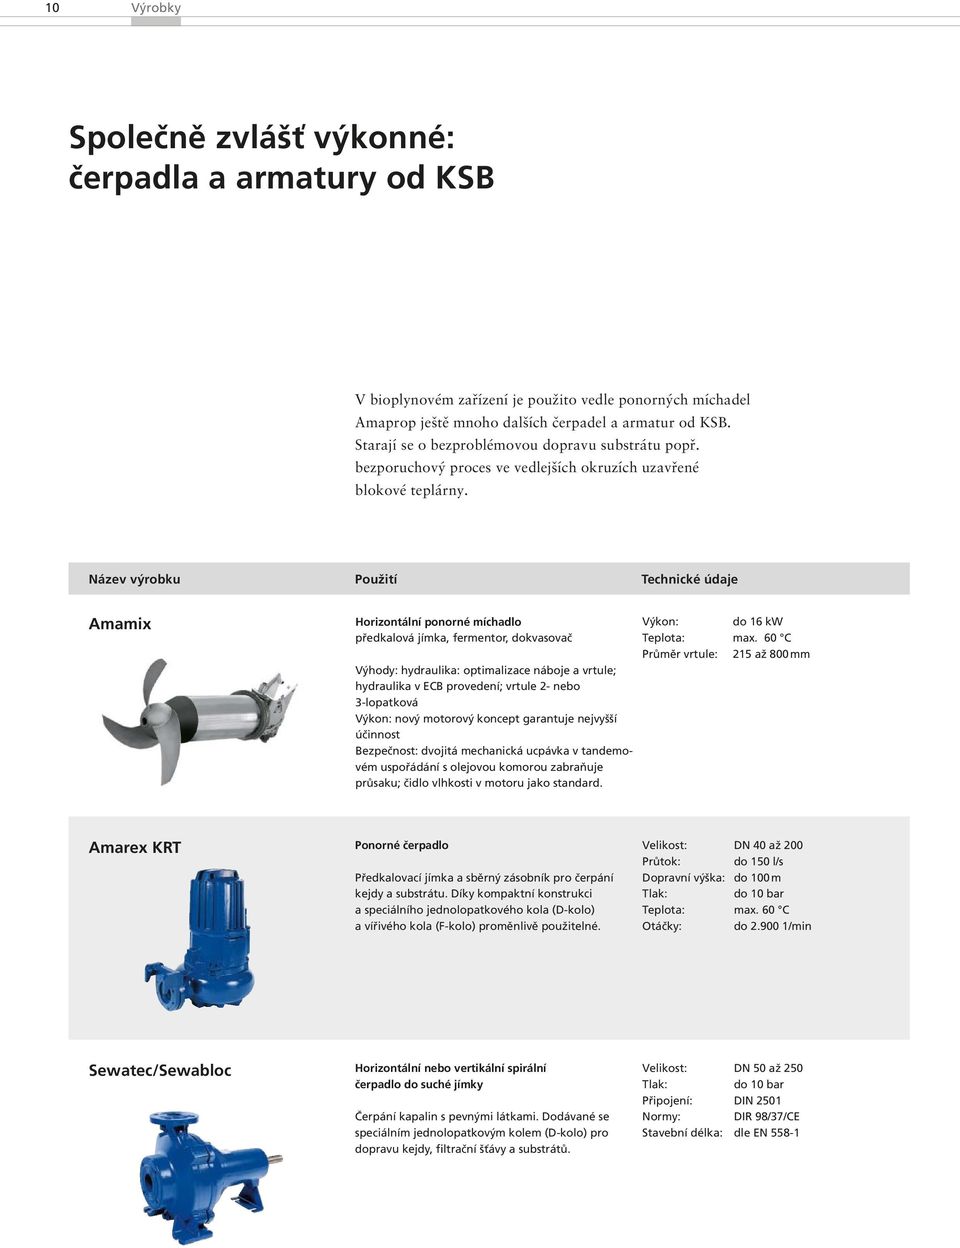 Název výrobku Použití Technické údaje Amamix Horizontální ponorné míchadlo předkalová jímka, fermentor, dokvasovač Výhody: hydraulika: optimalizace náboje a vrtule; hydraulika v ECB provedení; vrtule